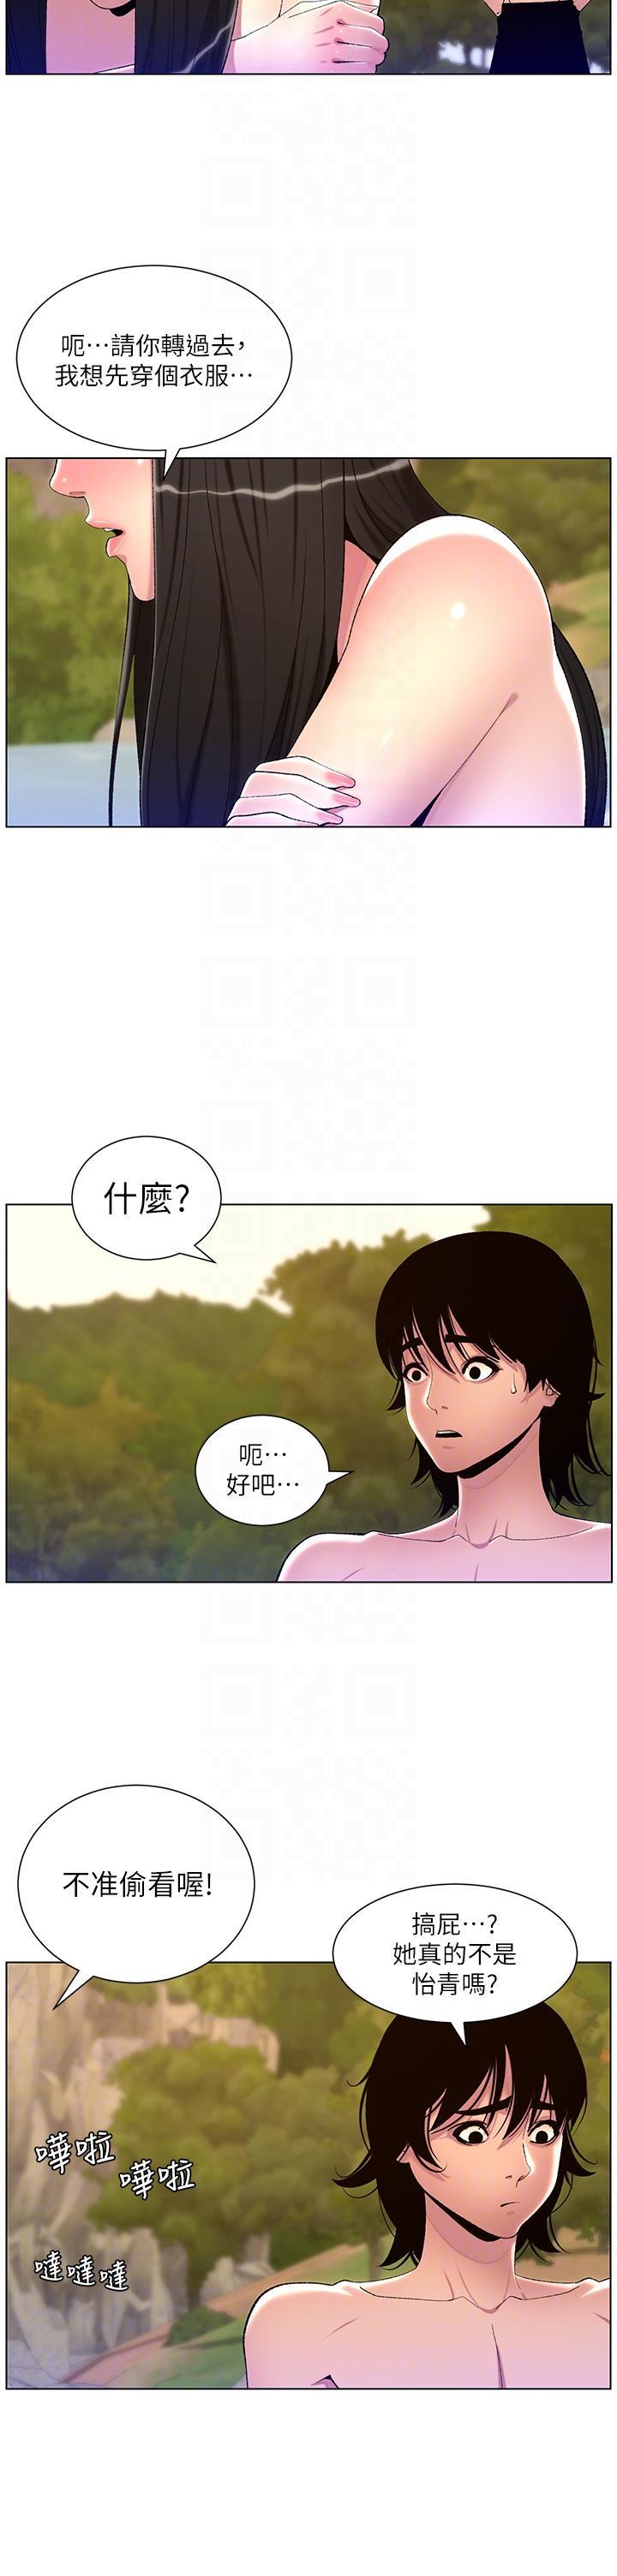 韩国污漫画 帝王App 第90话 最终话 游戏重新下载中… 34